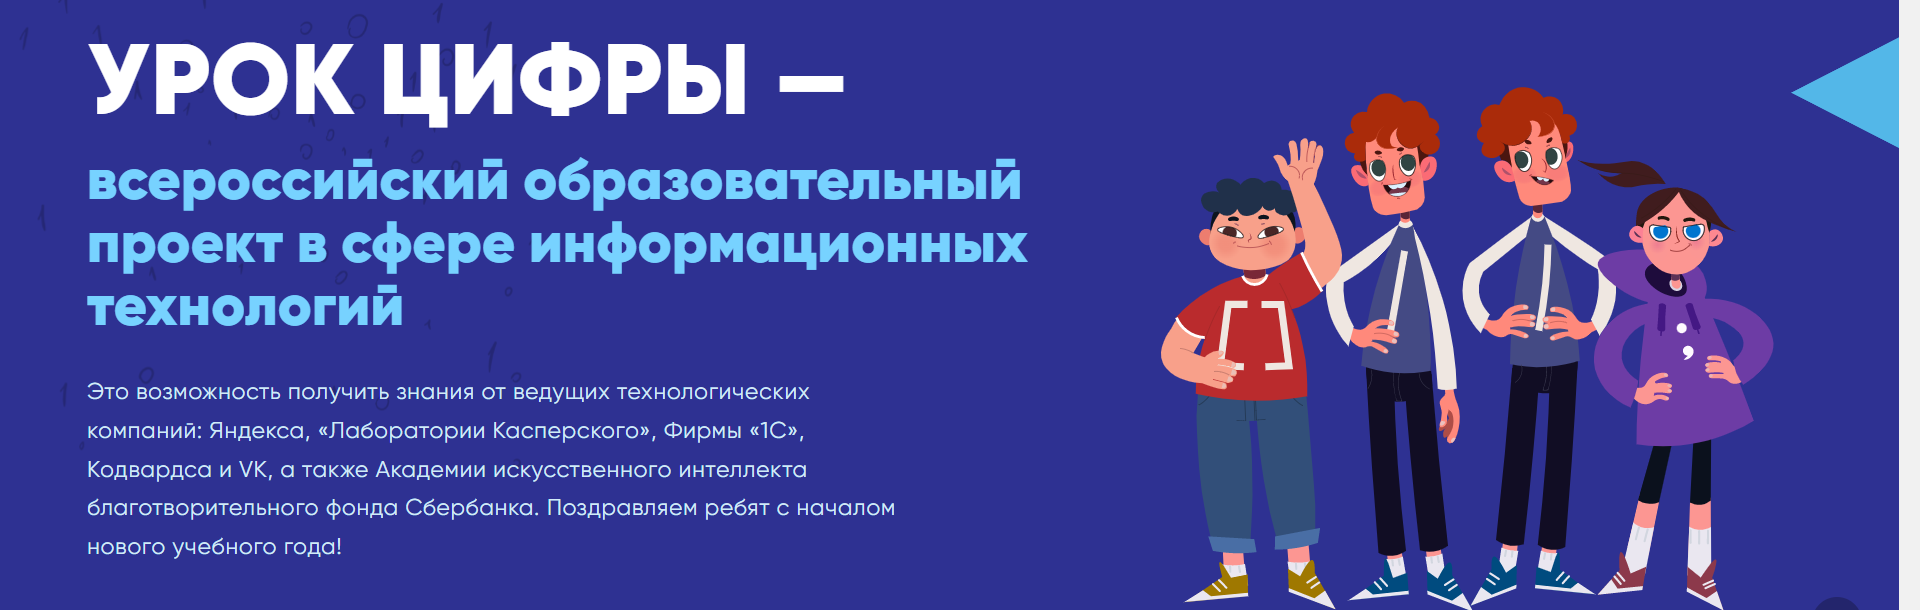 УРОК ЦИФРЫ — всероссийский образовательный проект в сфере информационных технологий